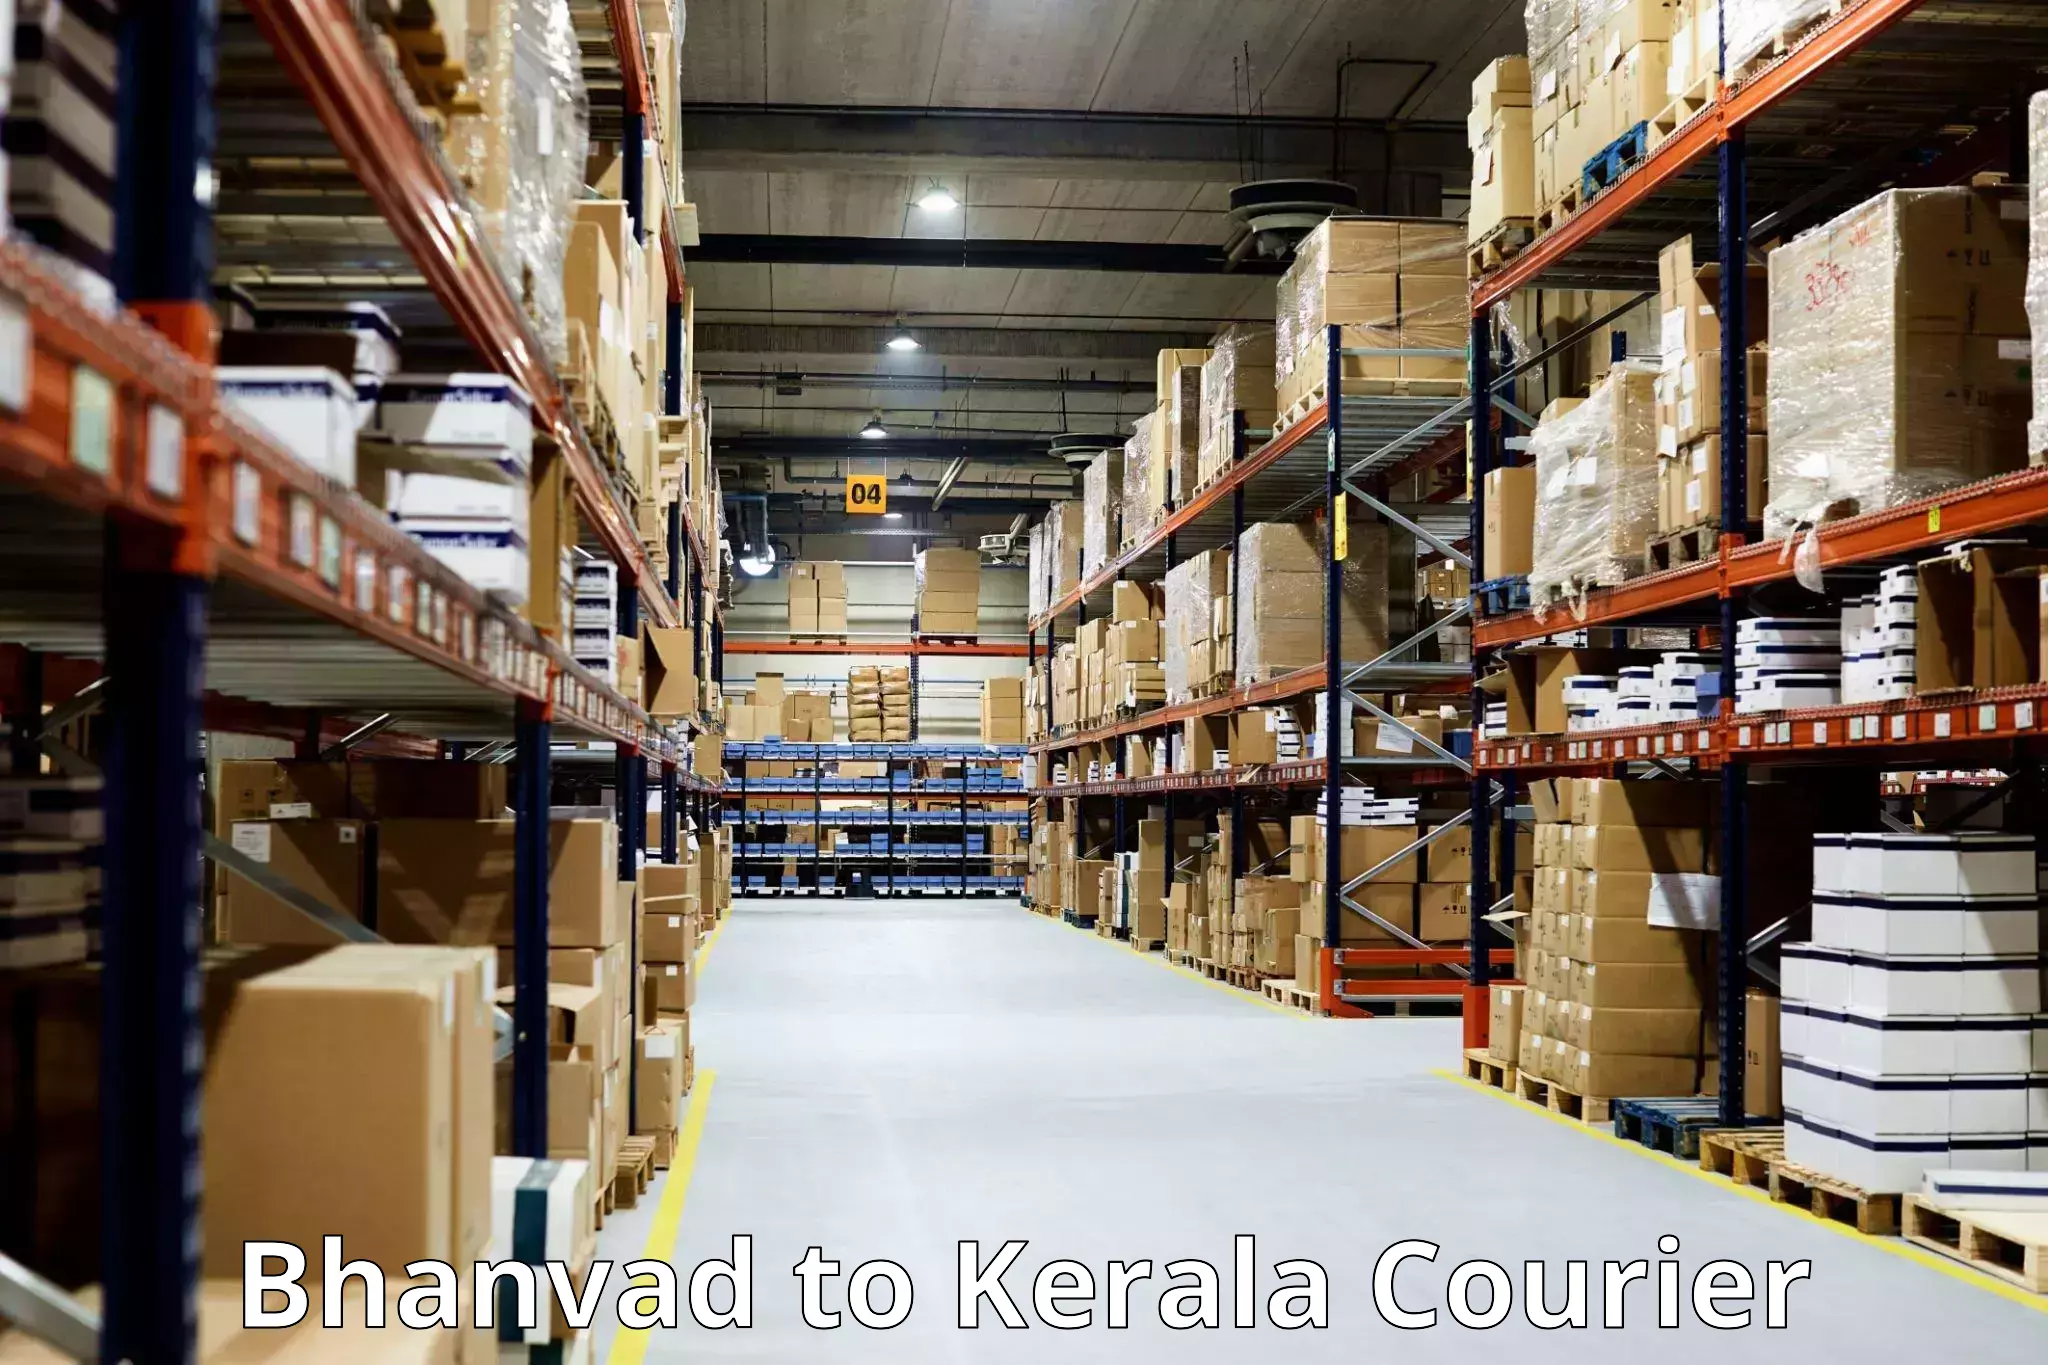 Door-to-door baggage service Bhanvad to Kerala